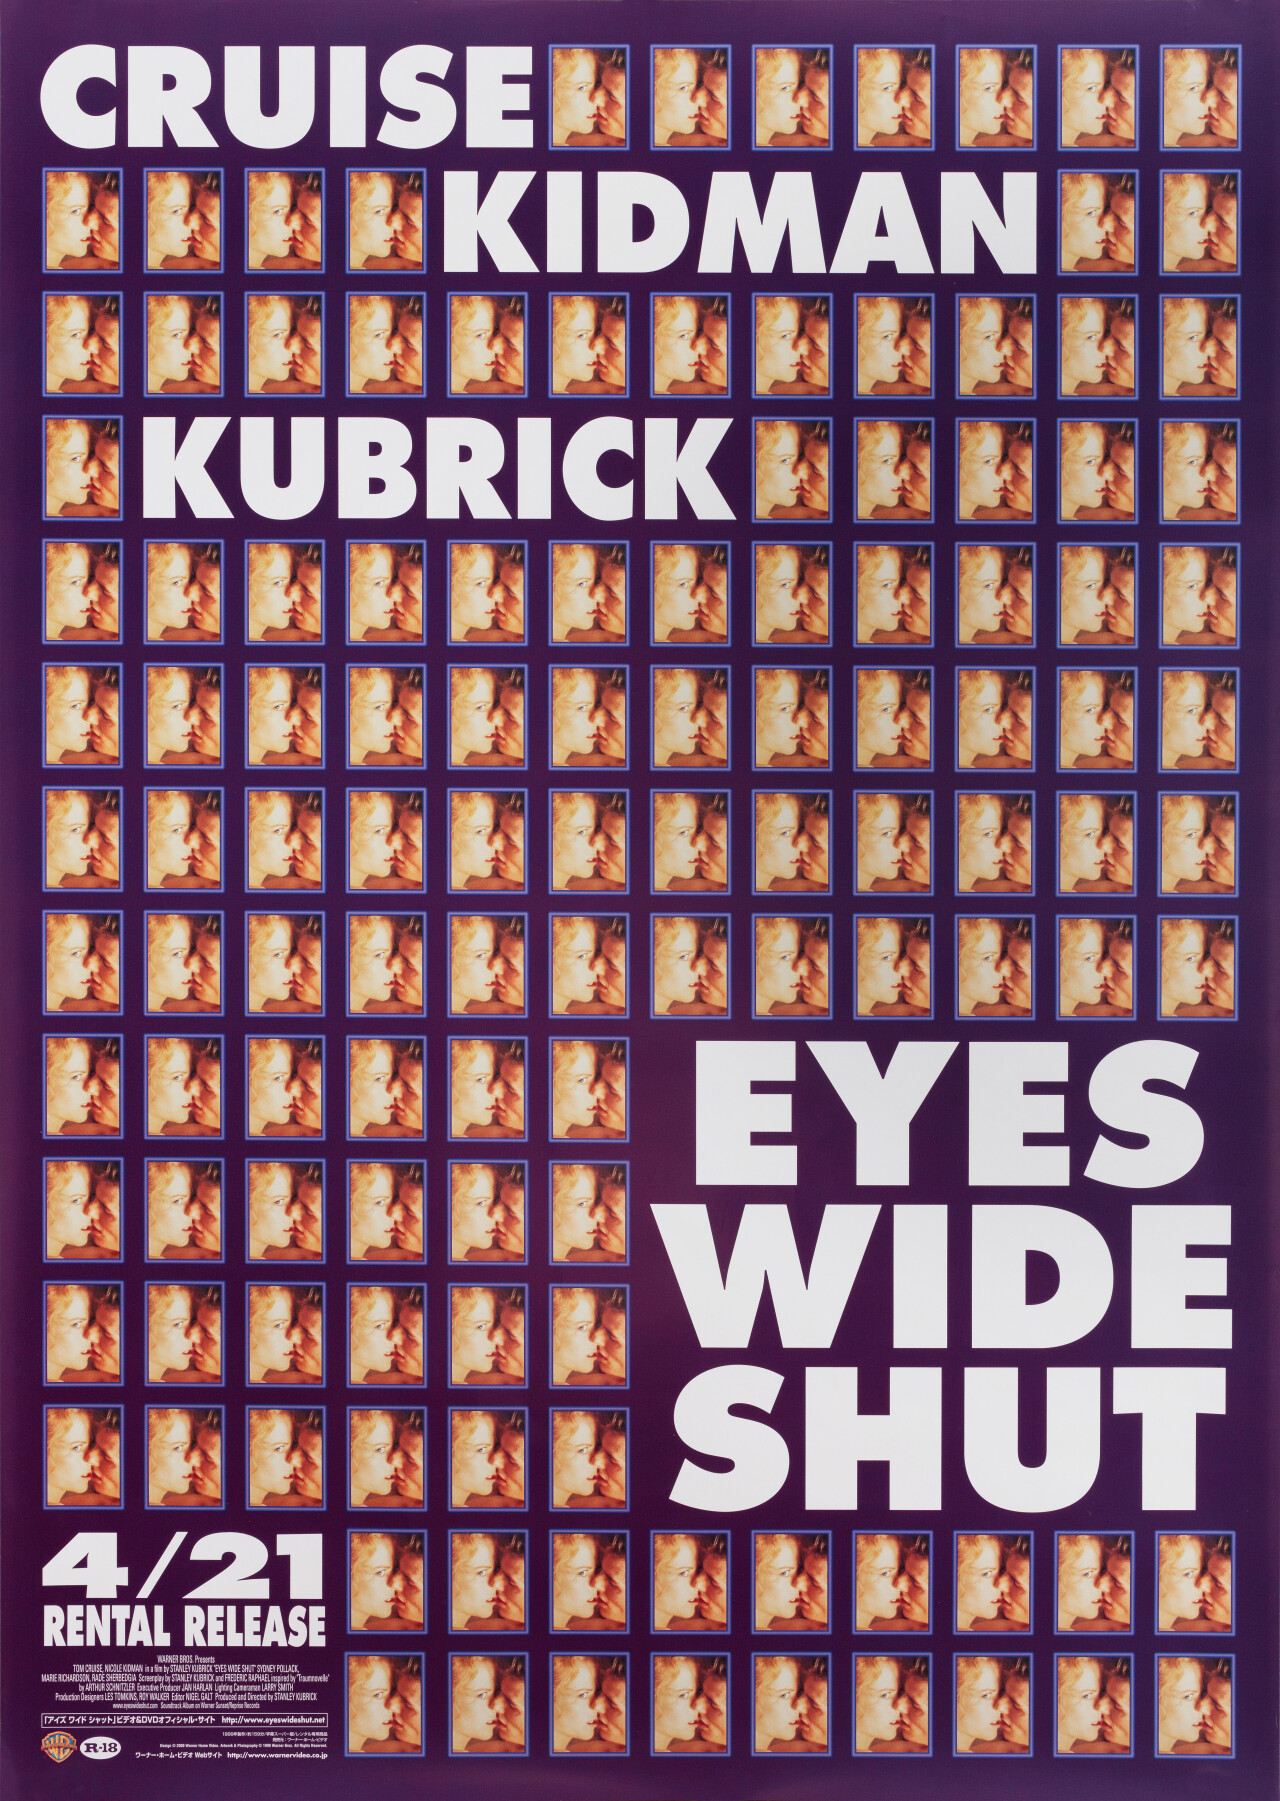 С широко закрытыми глазами (Eyes Wide Shut, 1999), режиссёр Стэнли Кубрик, японский постер к фильму (графический дизайн, 1999 год)